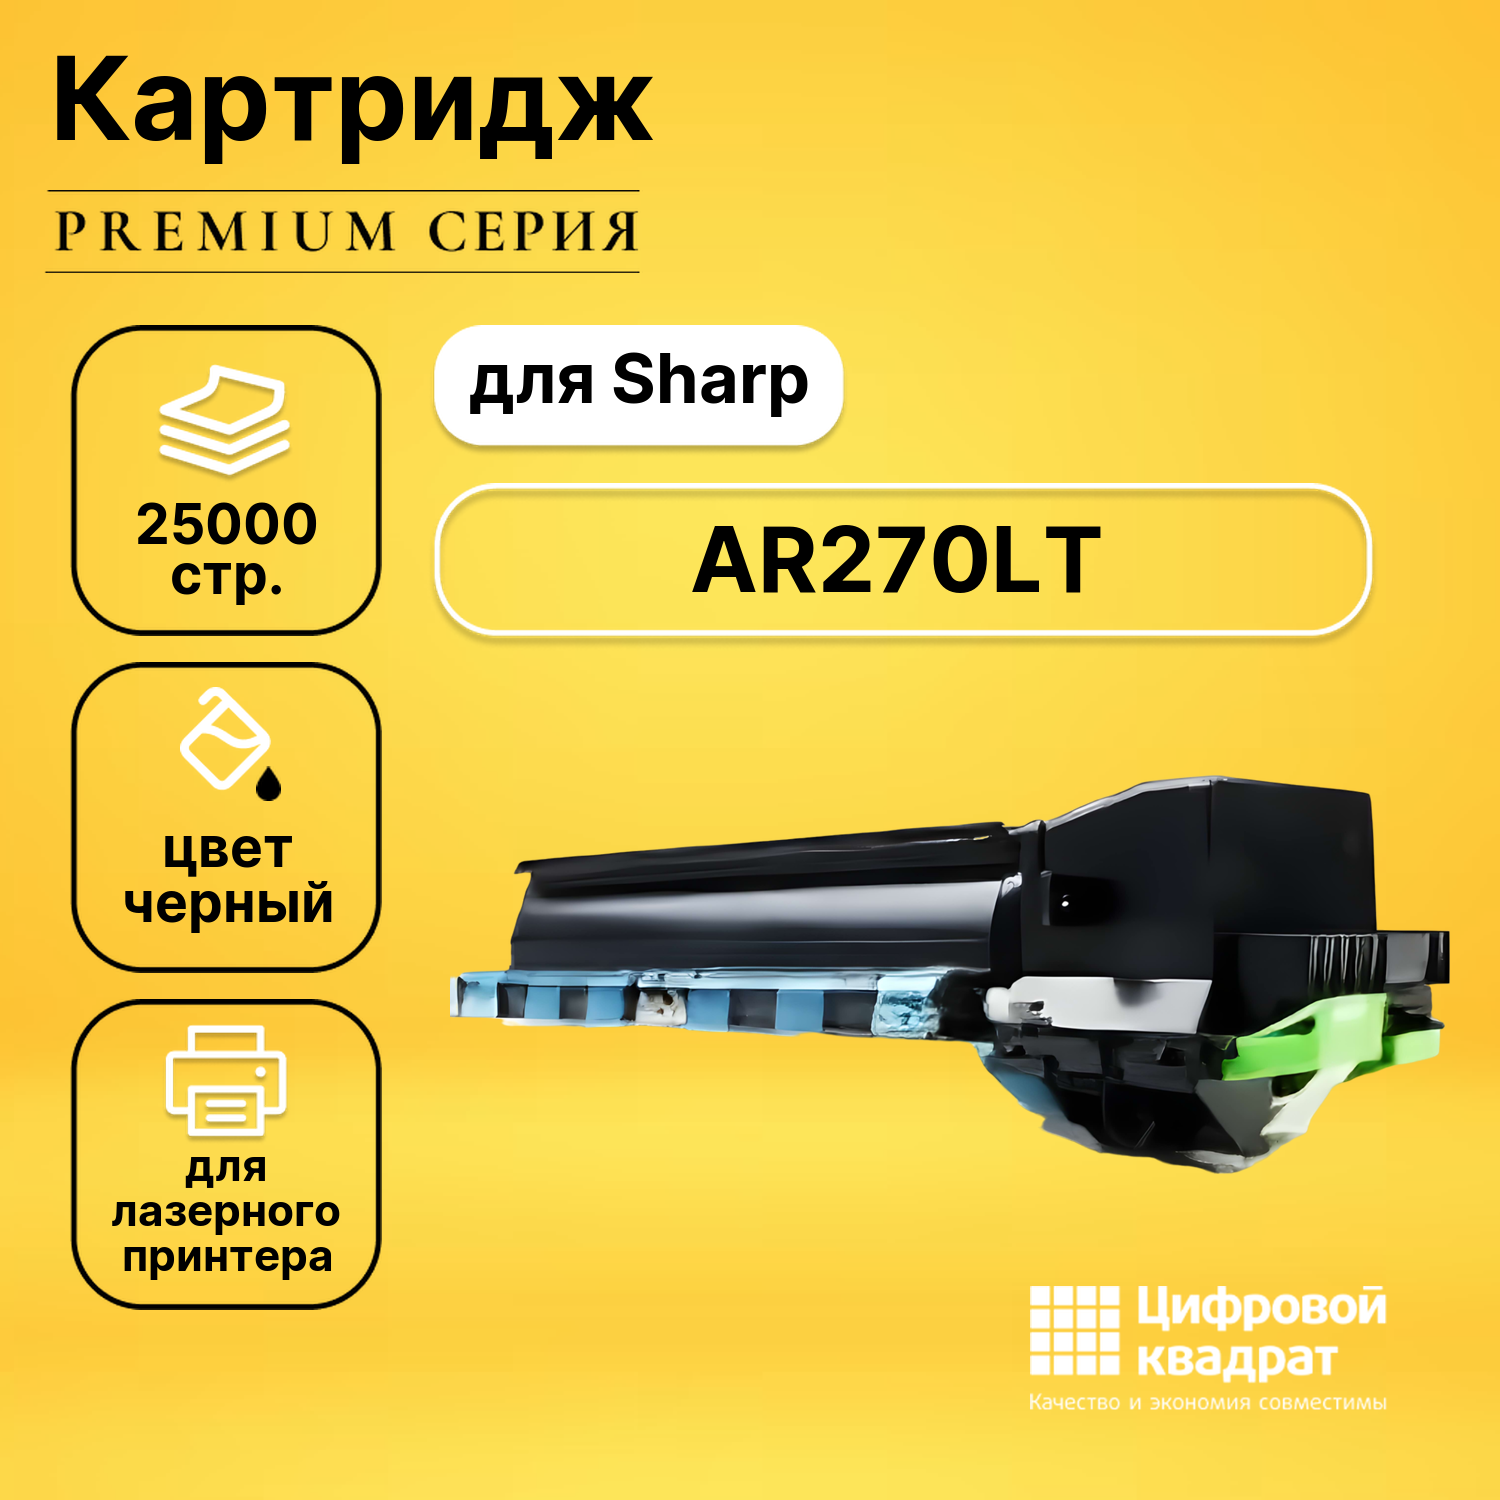 Картридж DS AR-270LT Sharp совместимый